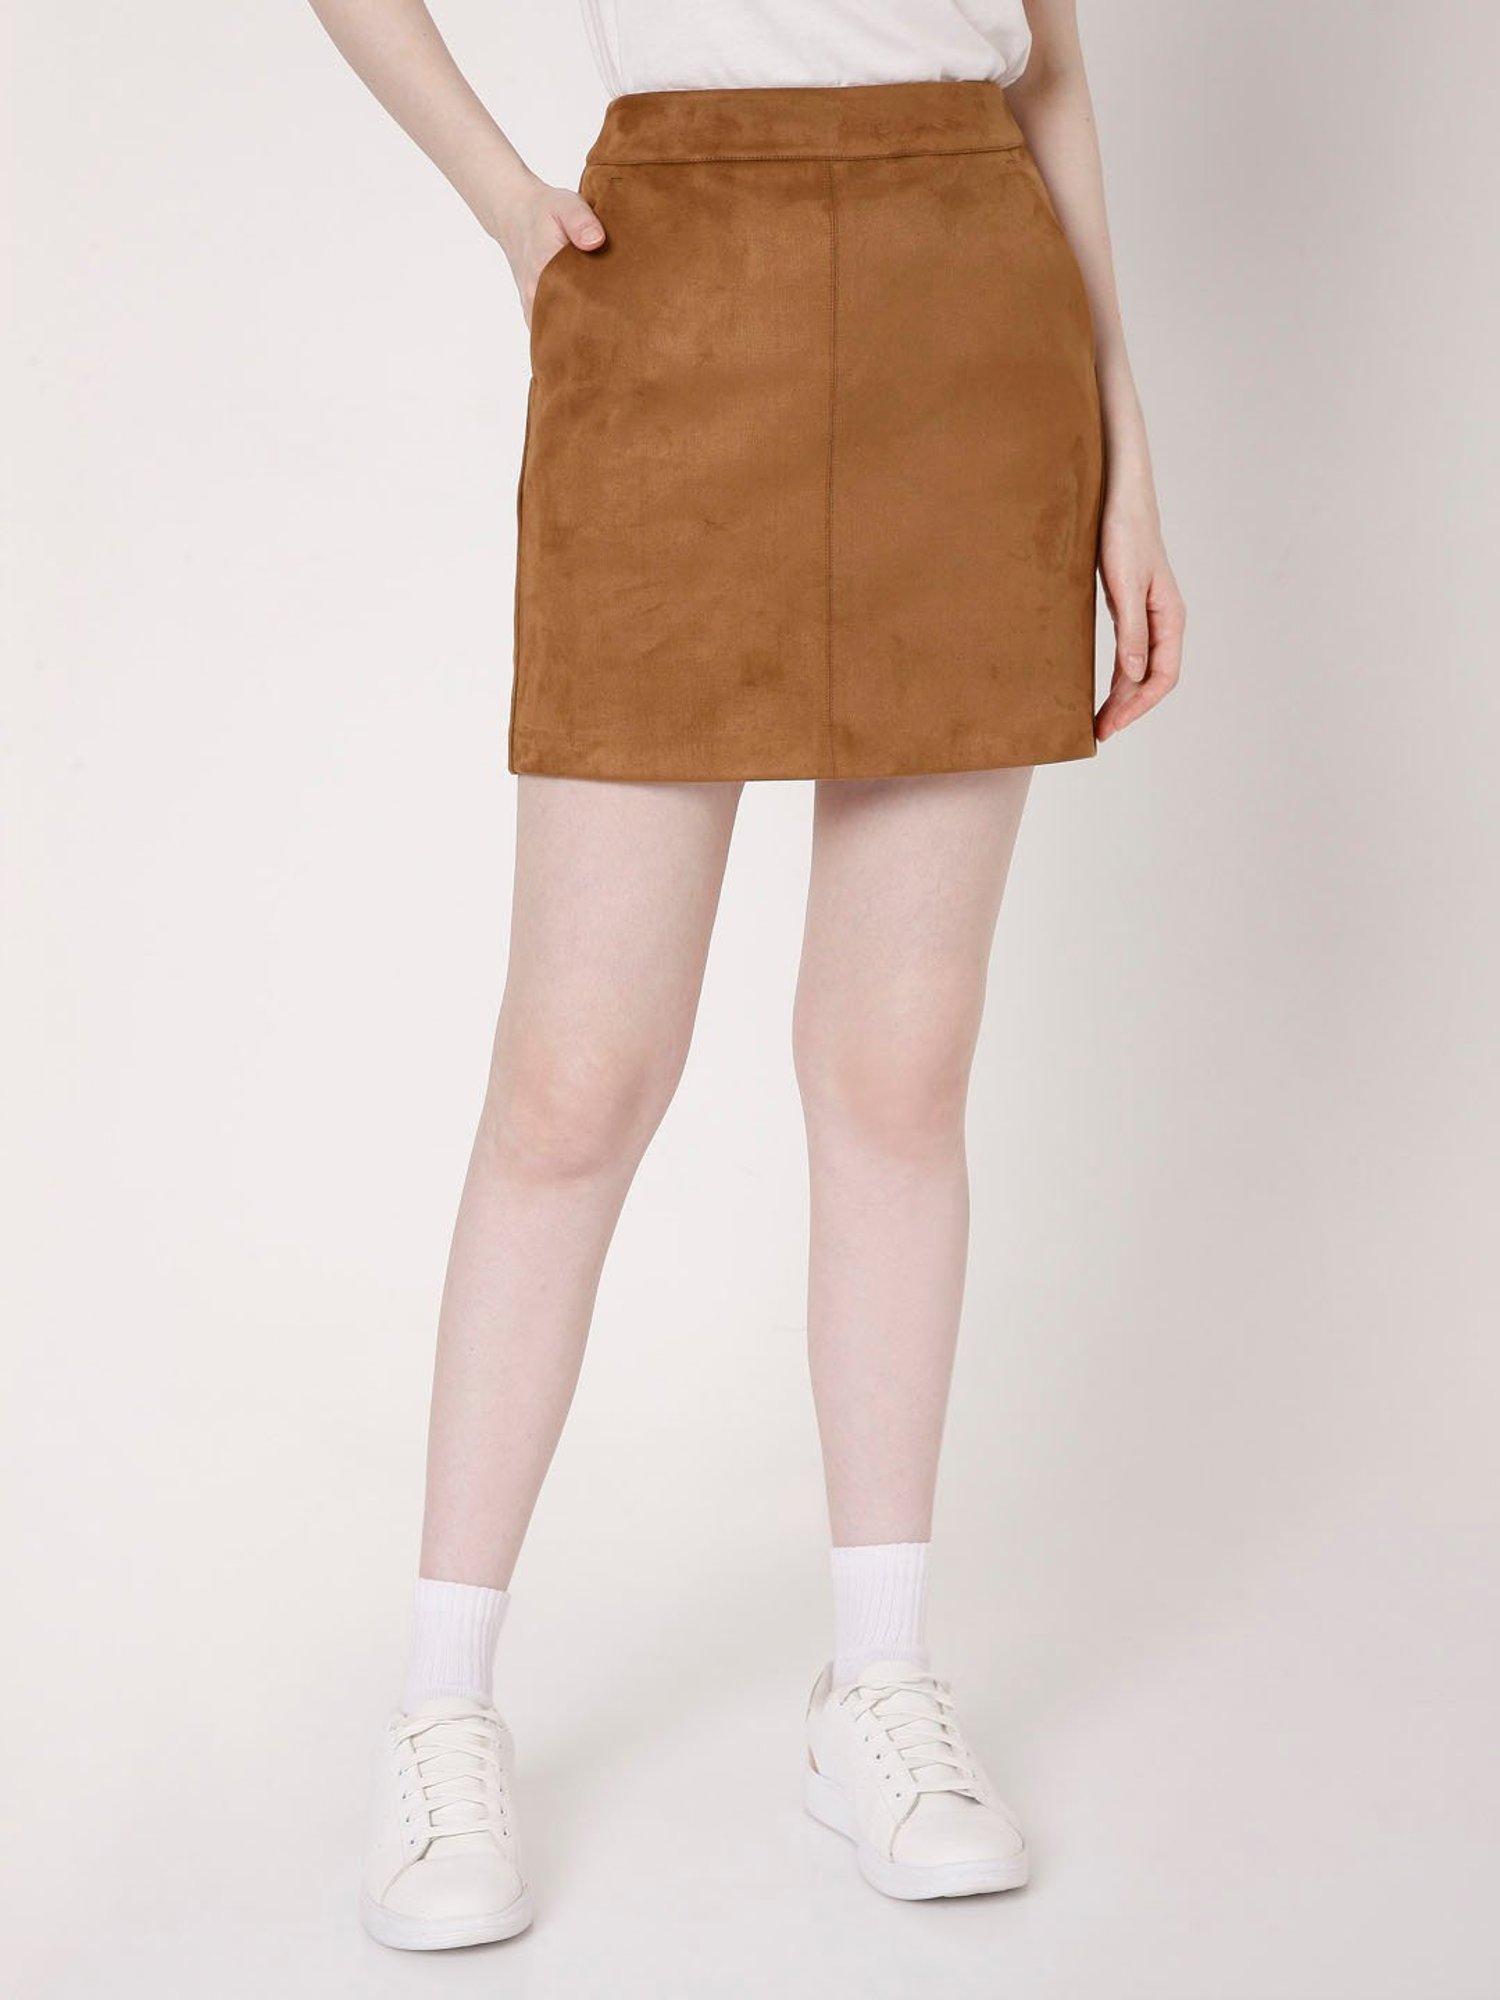 Vero Moda Brown Skirt for Women Online @ Tata CLiQ